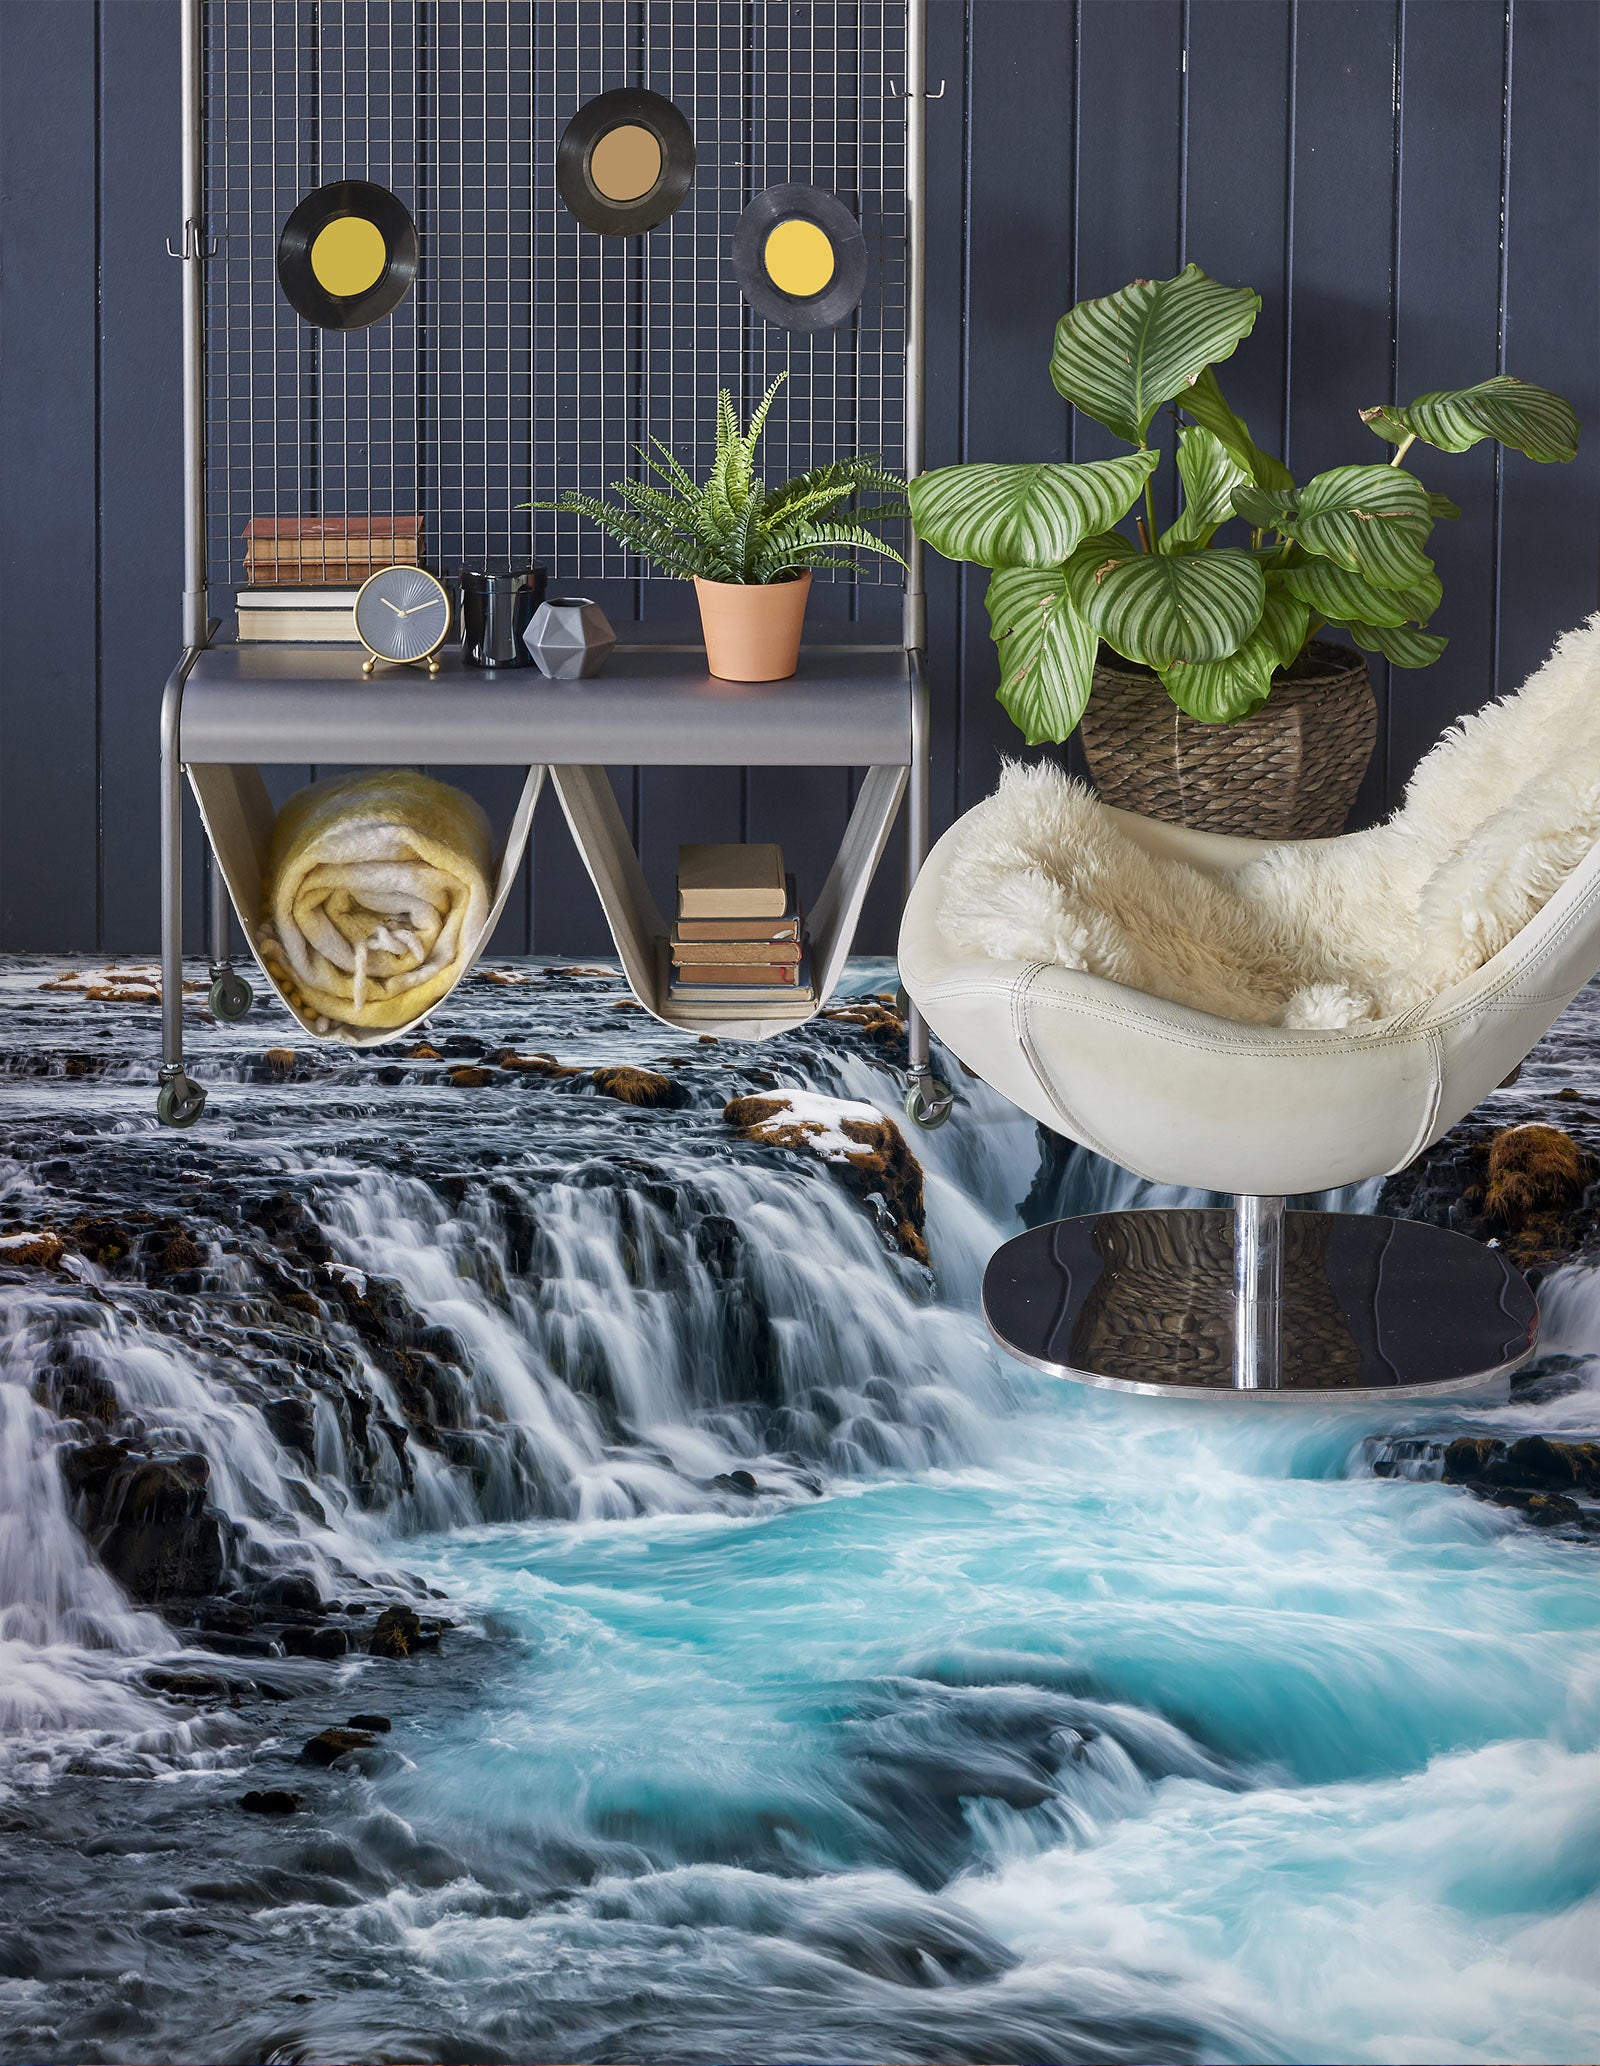 3D Magnificent Waterfall 666 Floor Mural  Wallpaper Murals Rug & Mat Print Epoxy waterproof bath floor